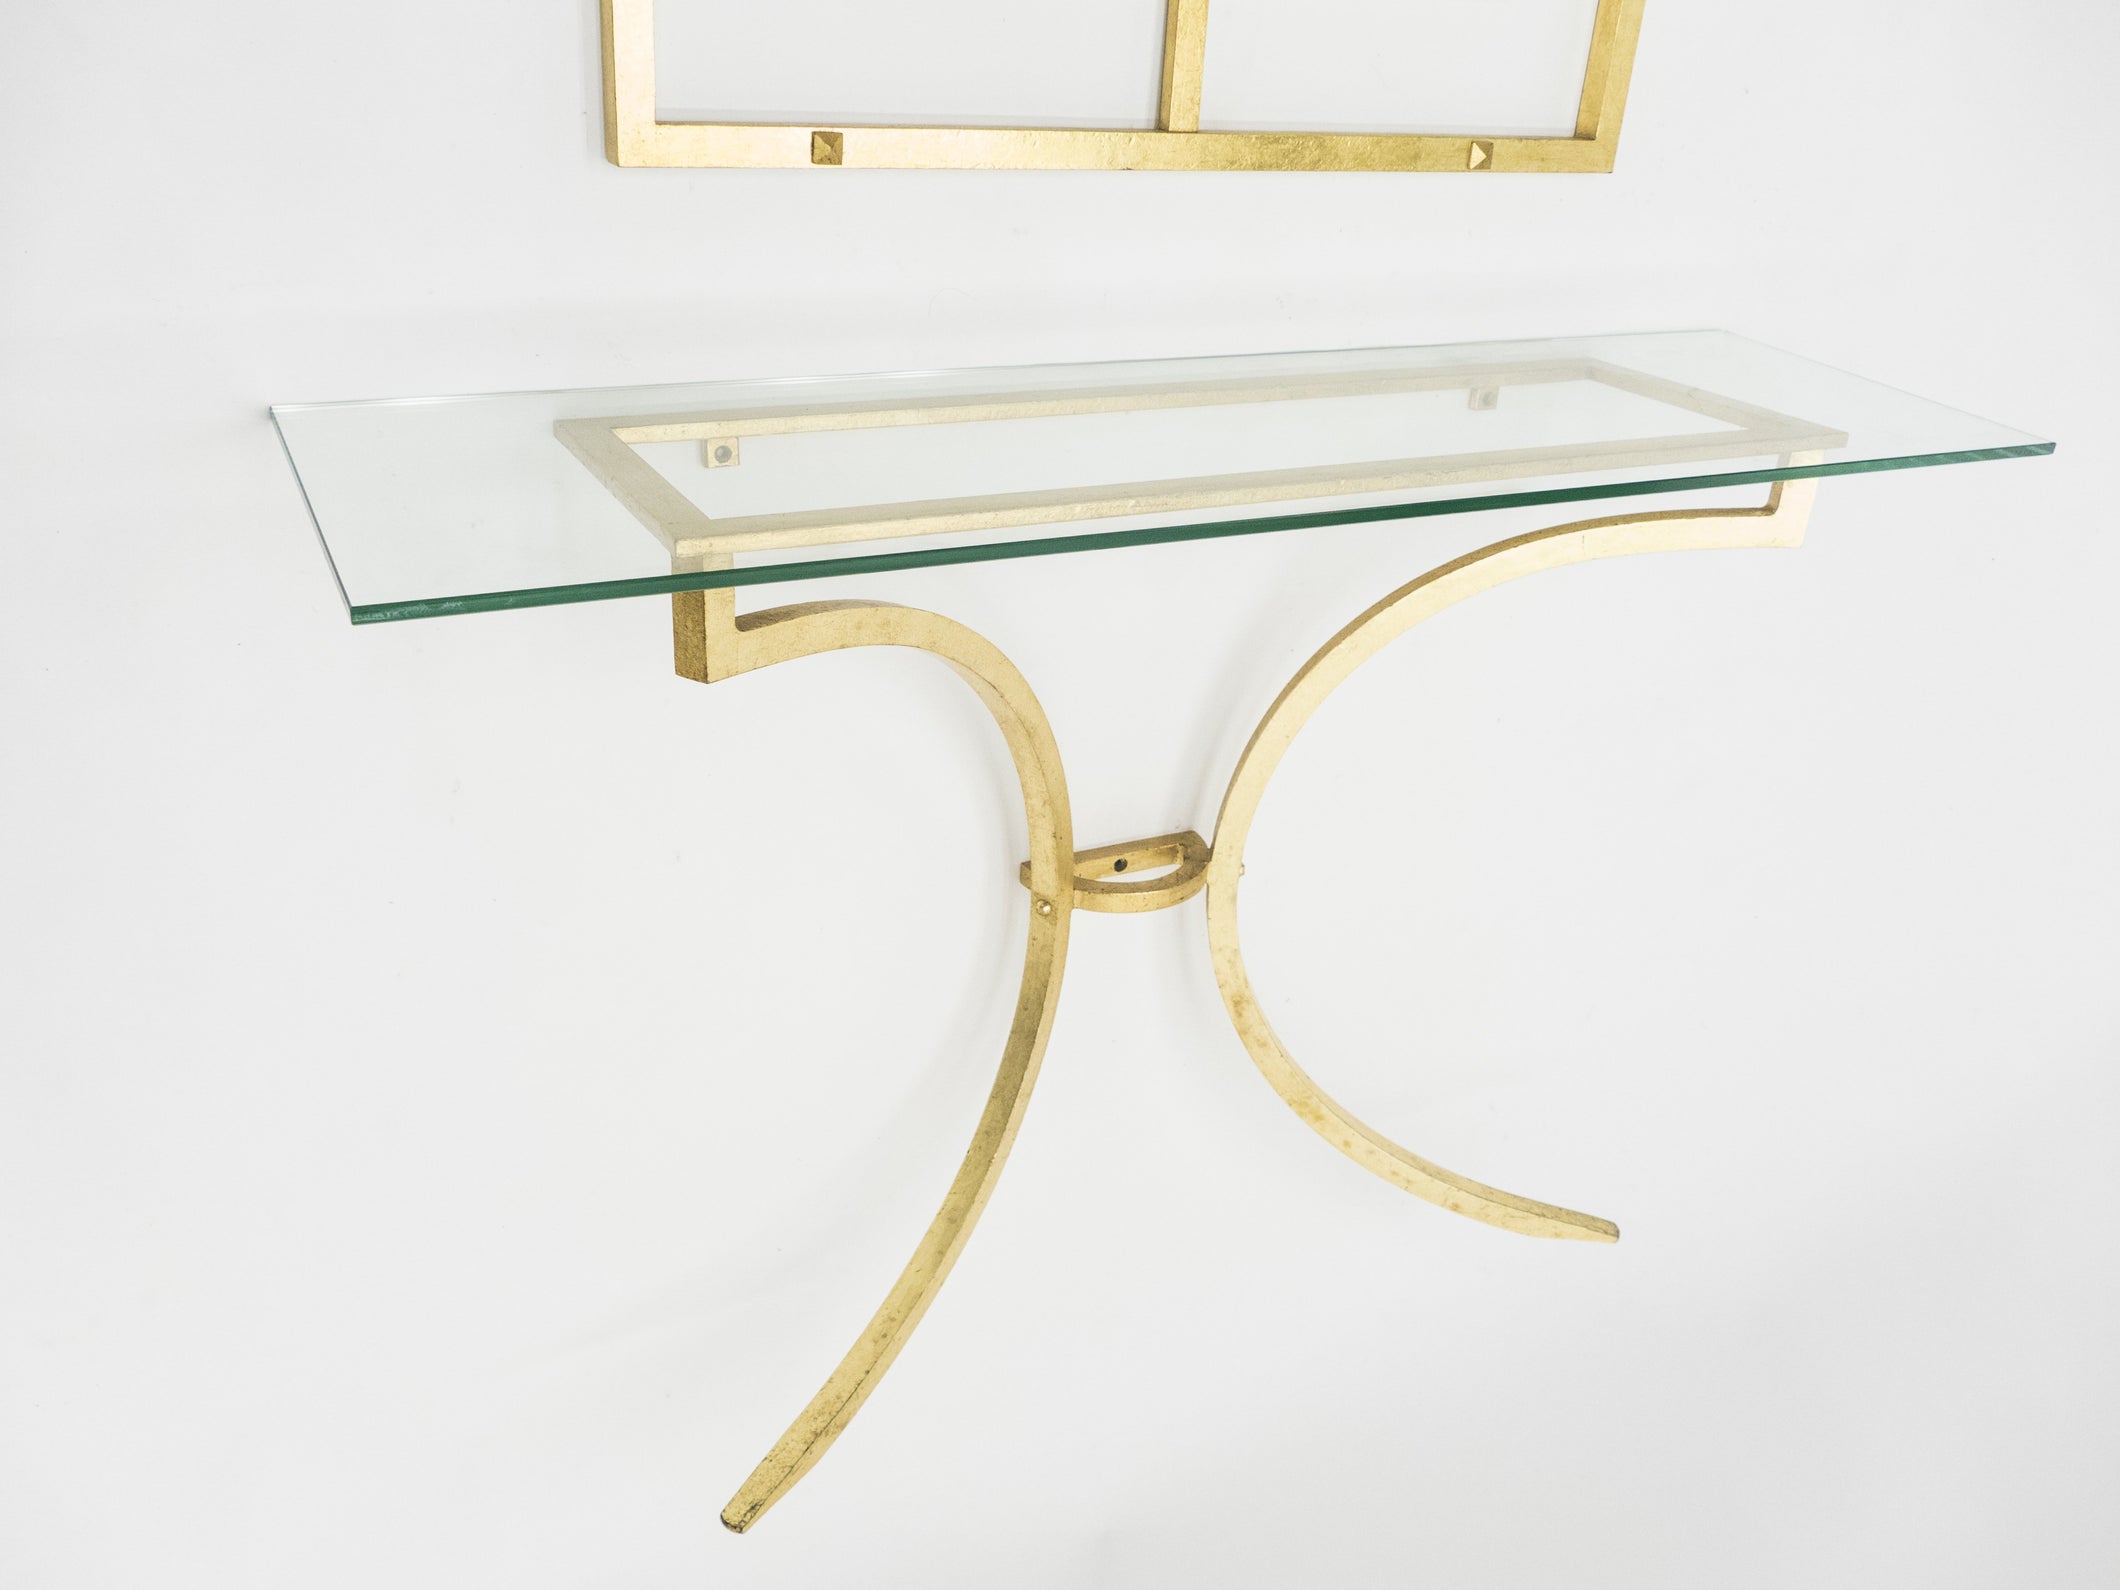 Rare console et miroir en fer forgé dorée de Robert Thibier années 60